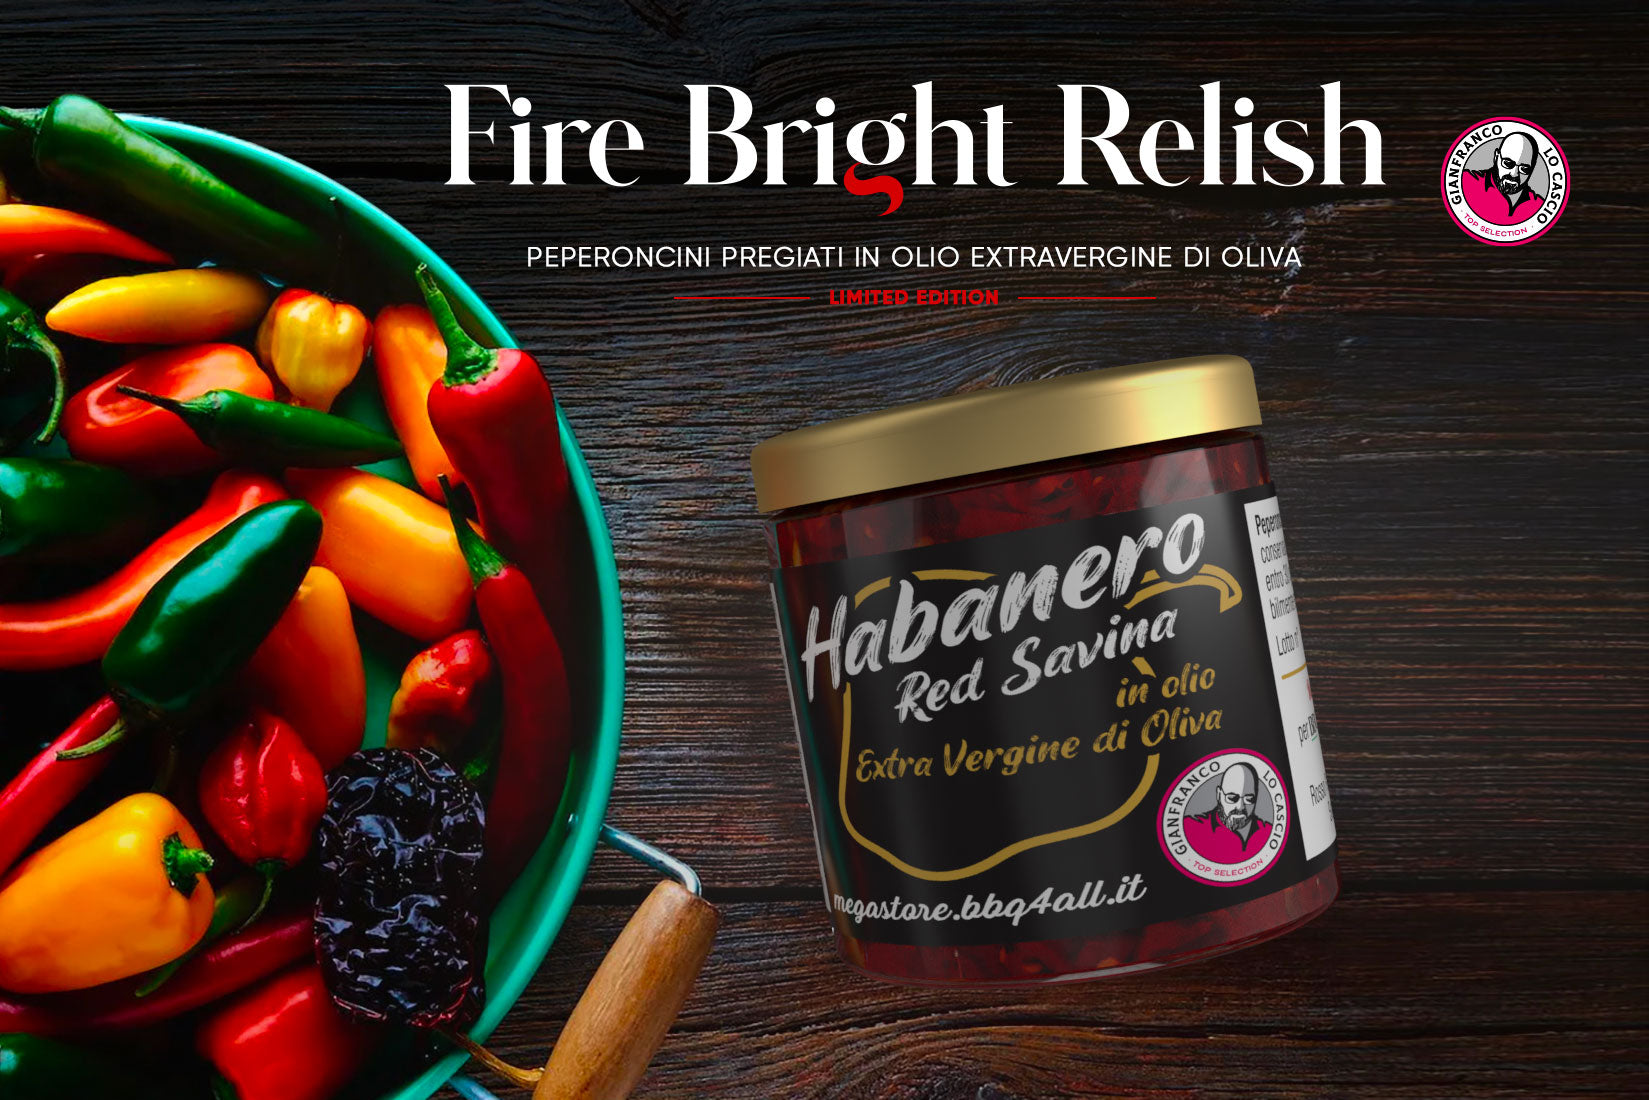 Fire Bright Relish - Habanero Red Savina 85g